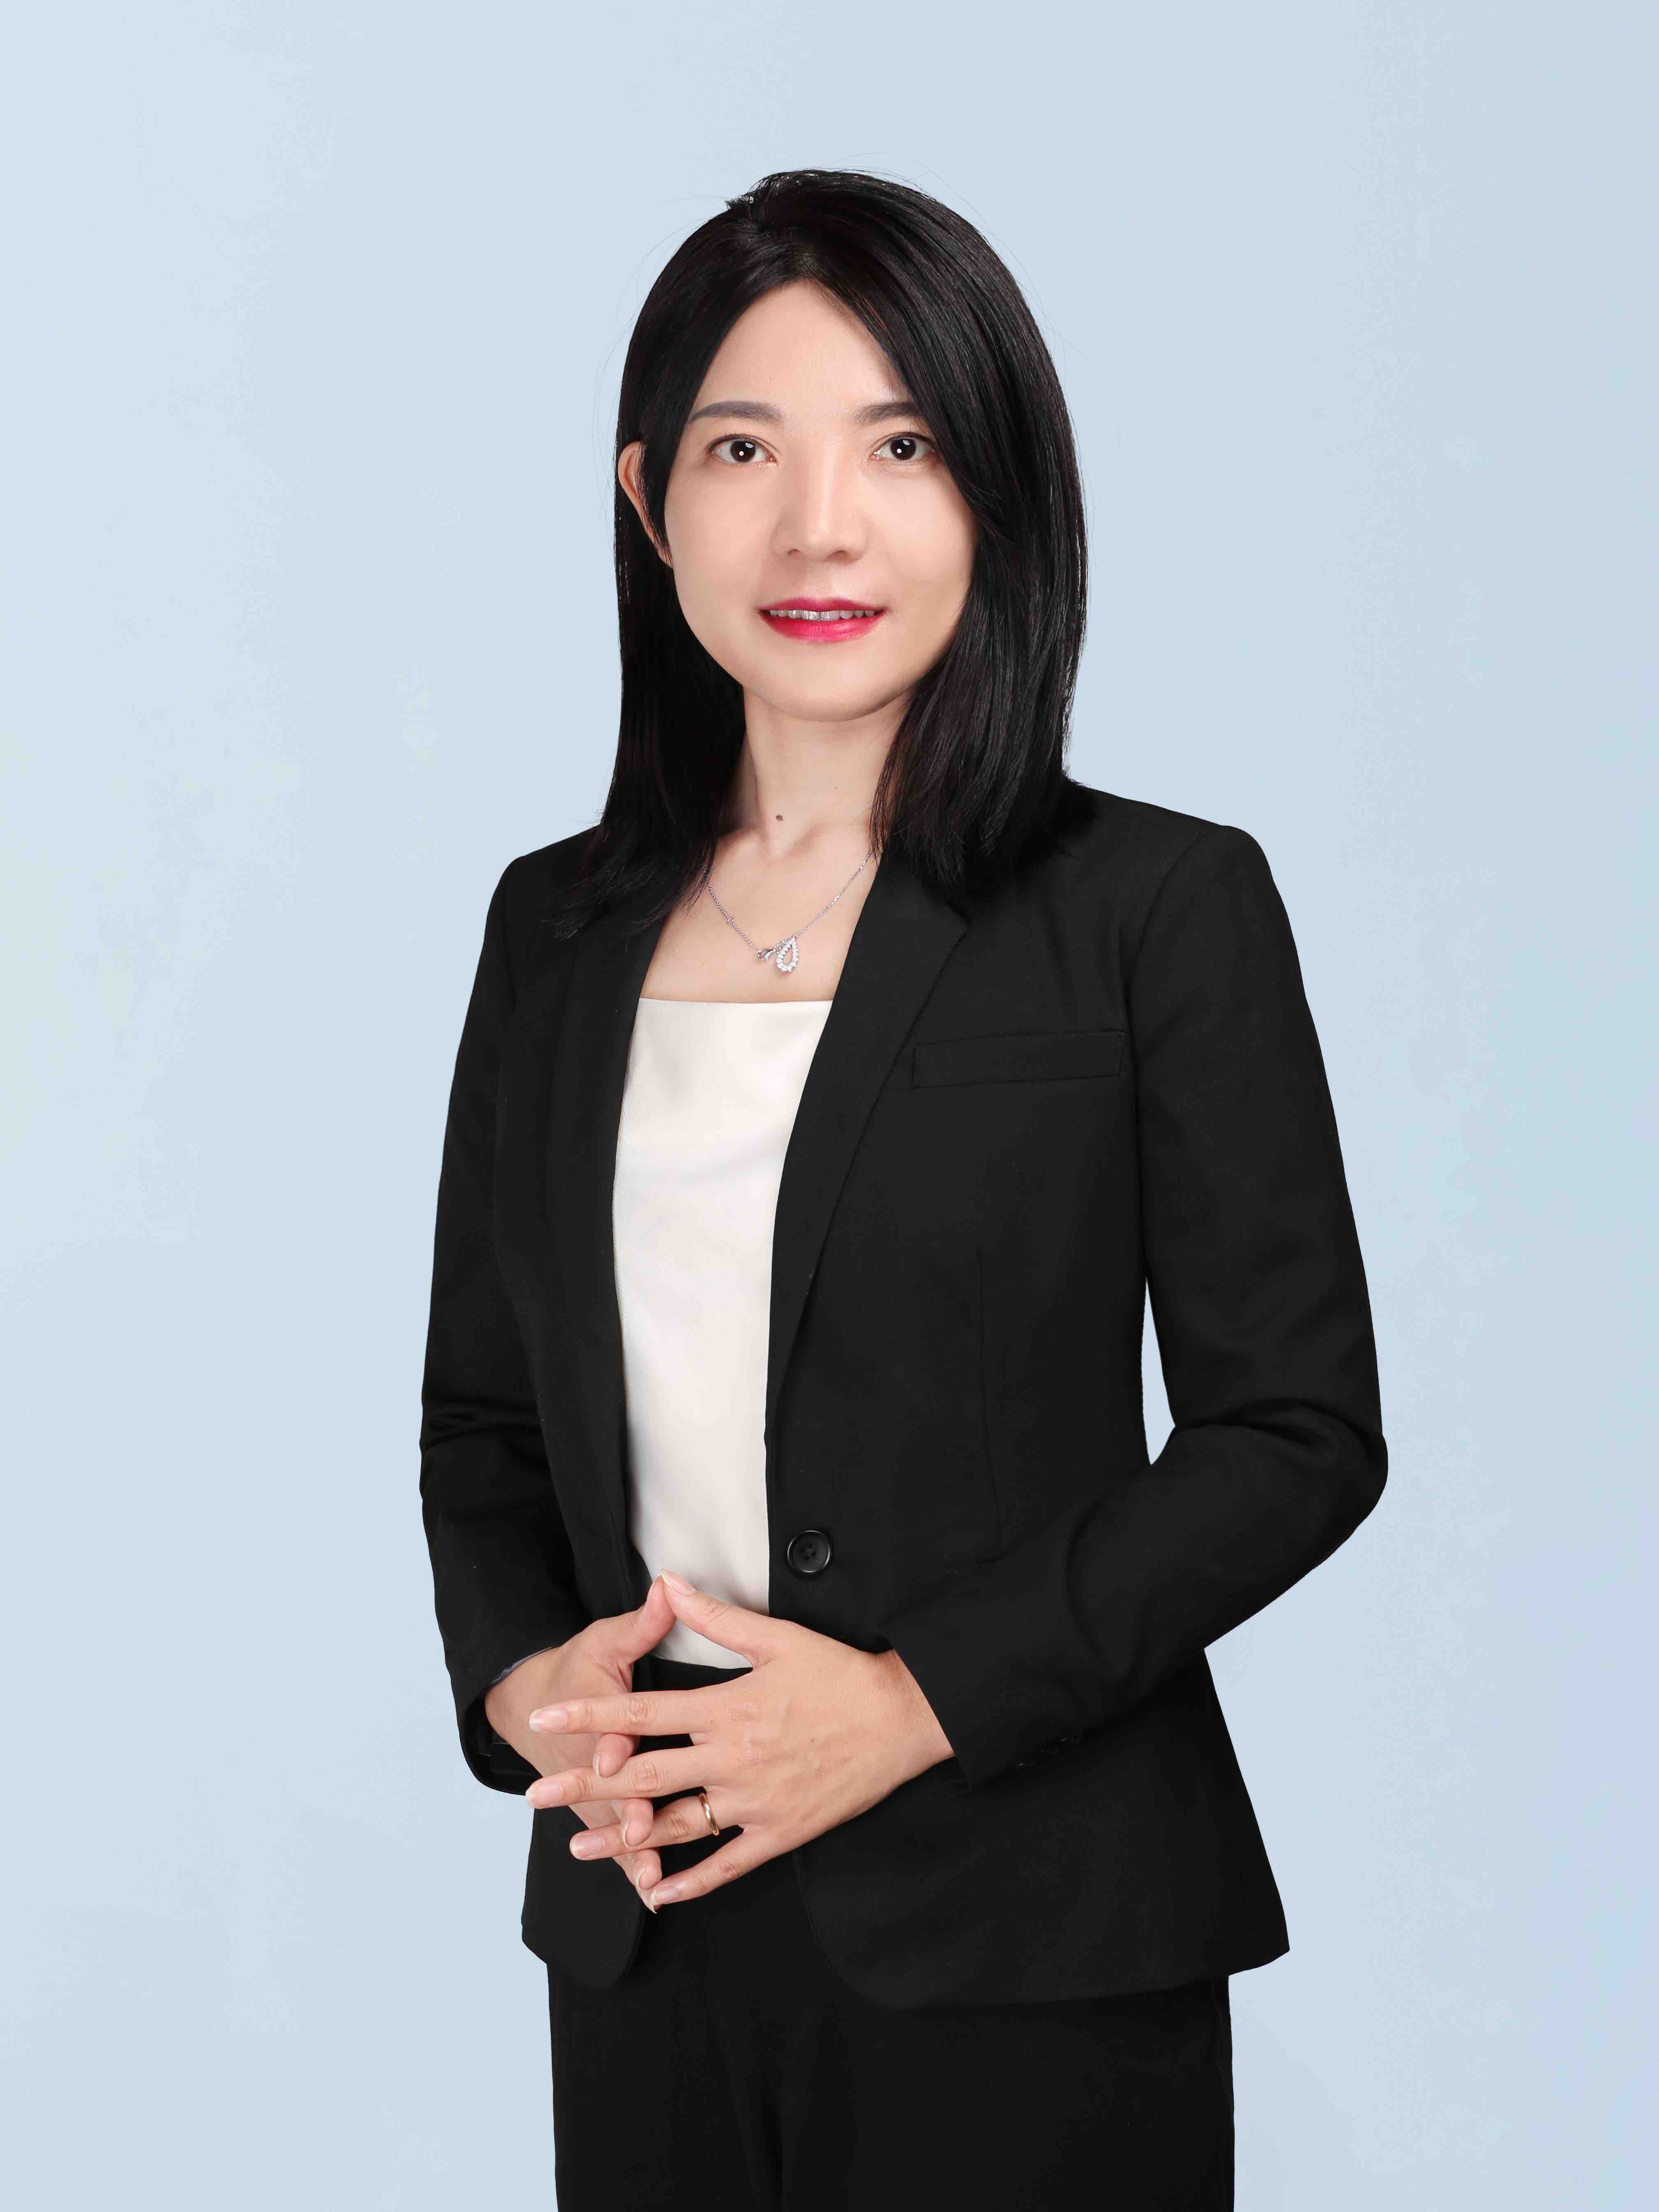 Ying Wang, Ph.D.